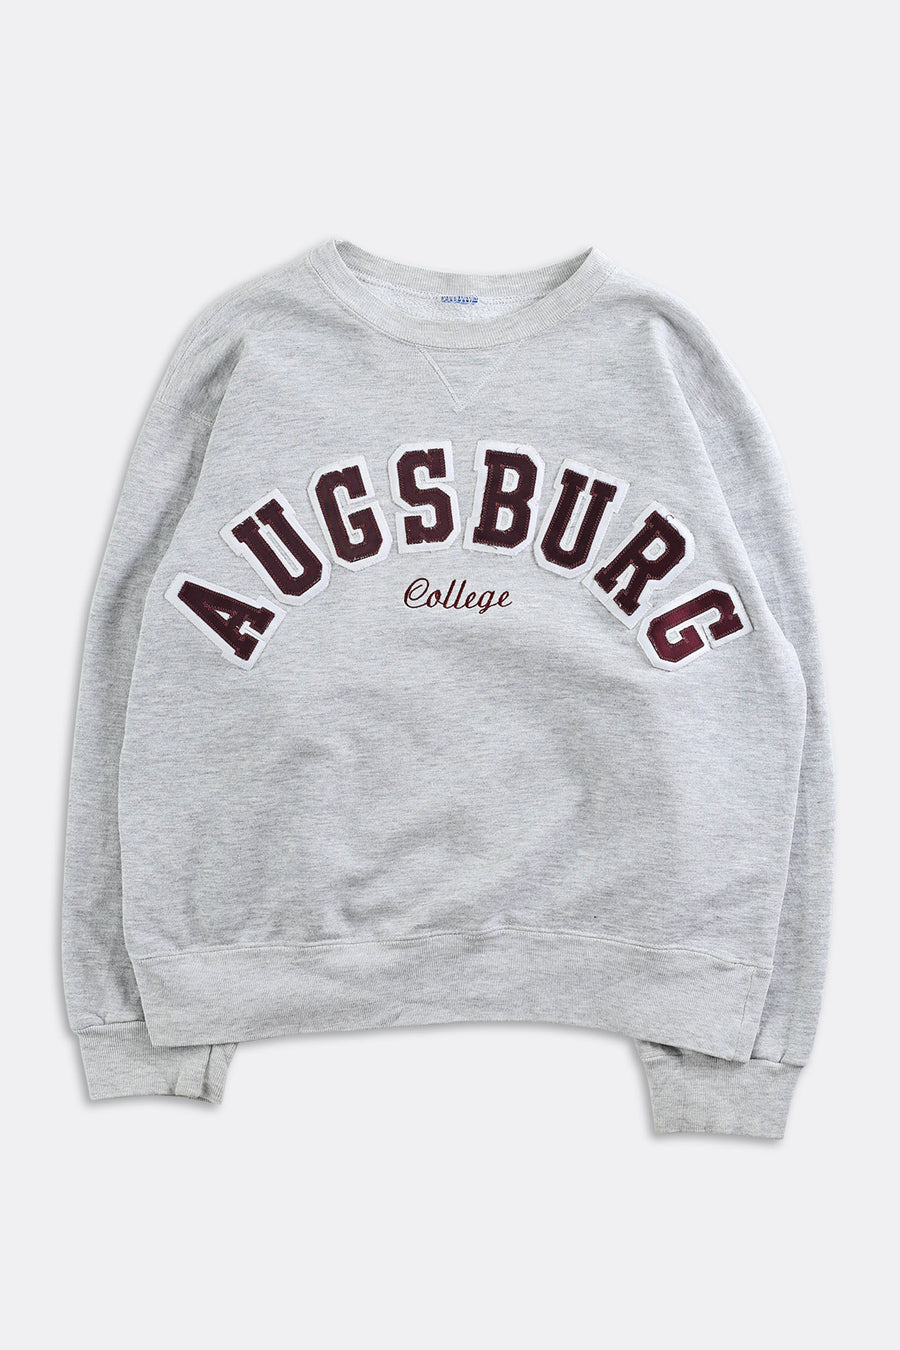 Vintage Ausburg College Sweatshirt